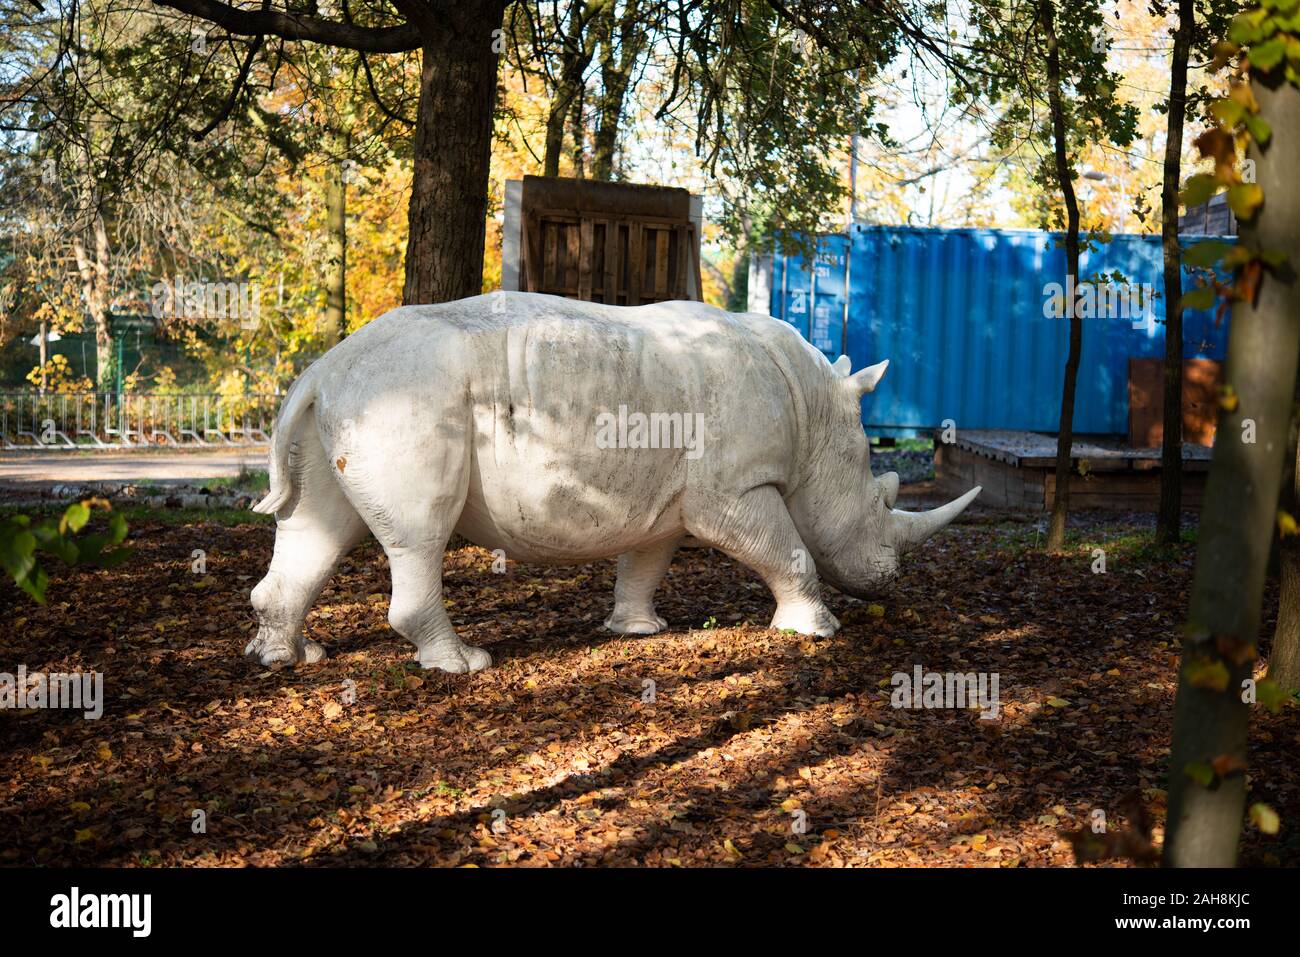 Statua fuori un rinoceronte bianco o rinoceronte nel bosco Foto Stock